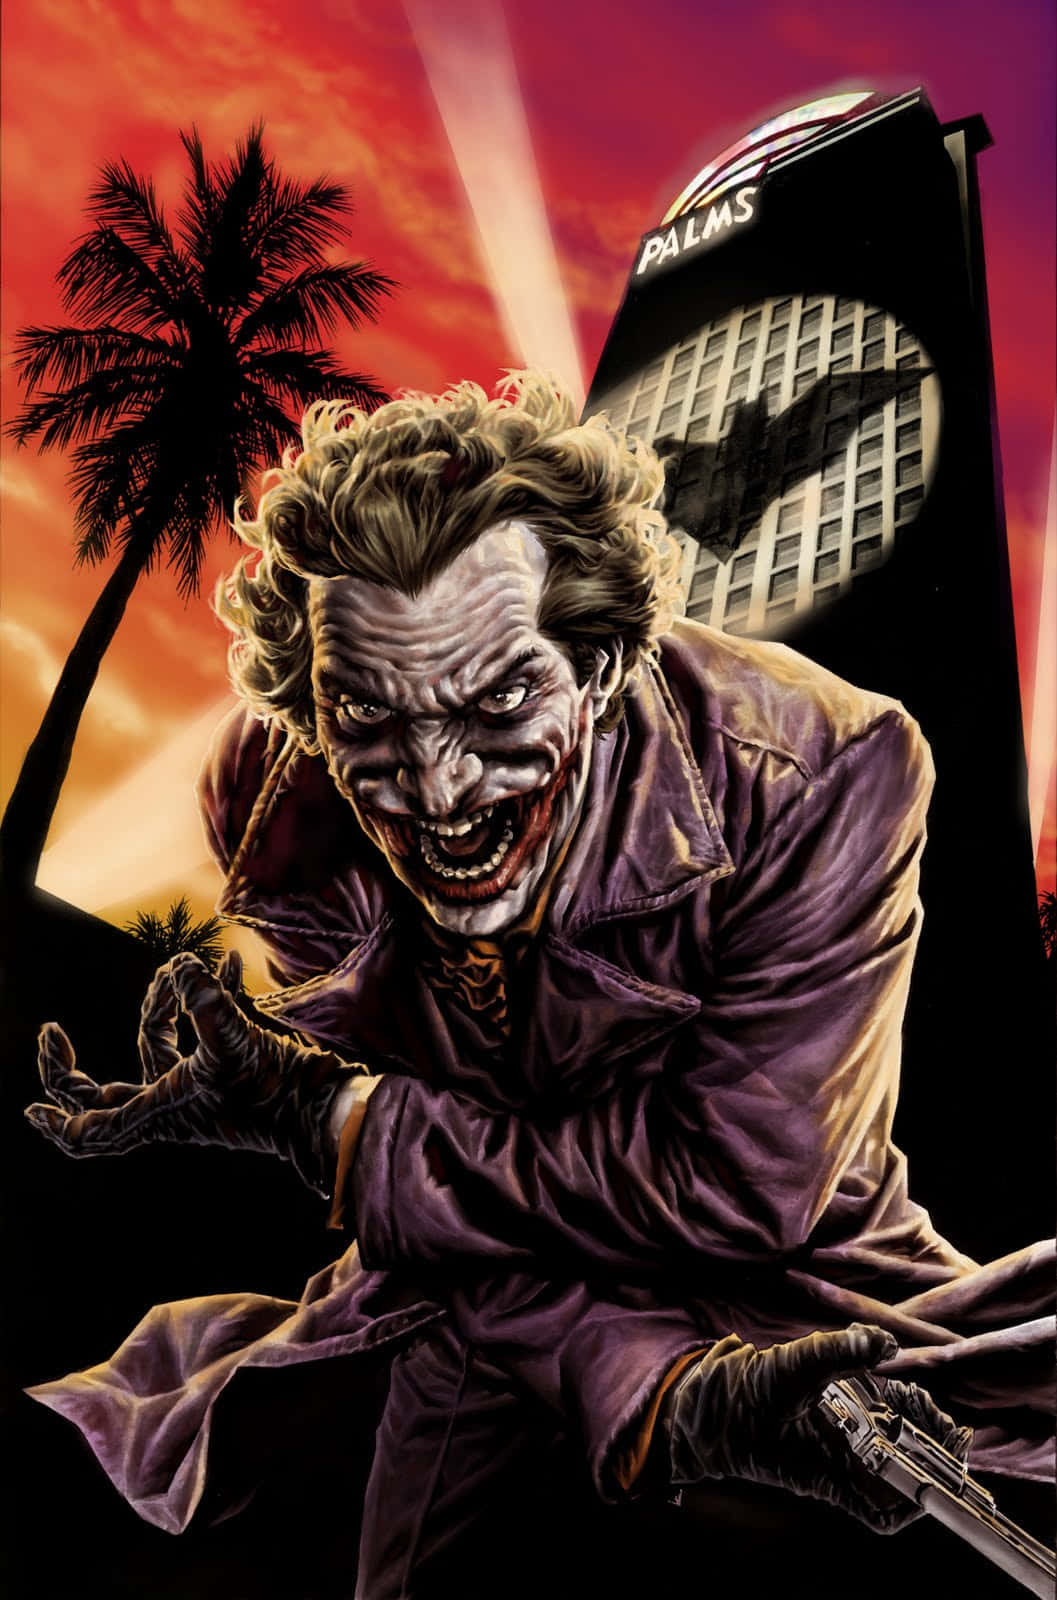 Imagende Ilustración Cómica De La Máscara Del Joker